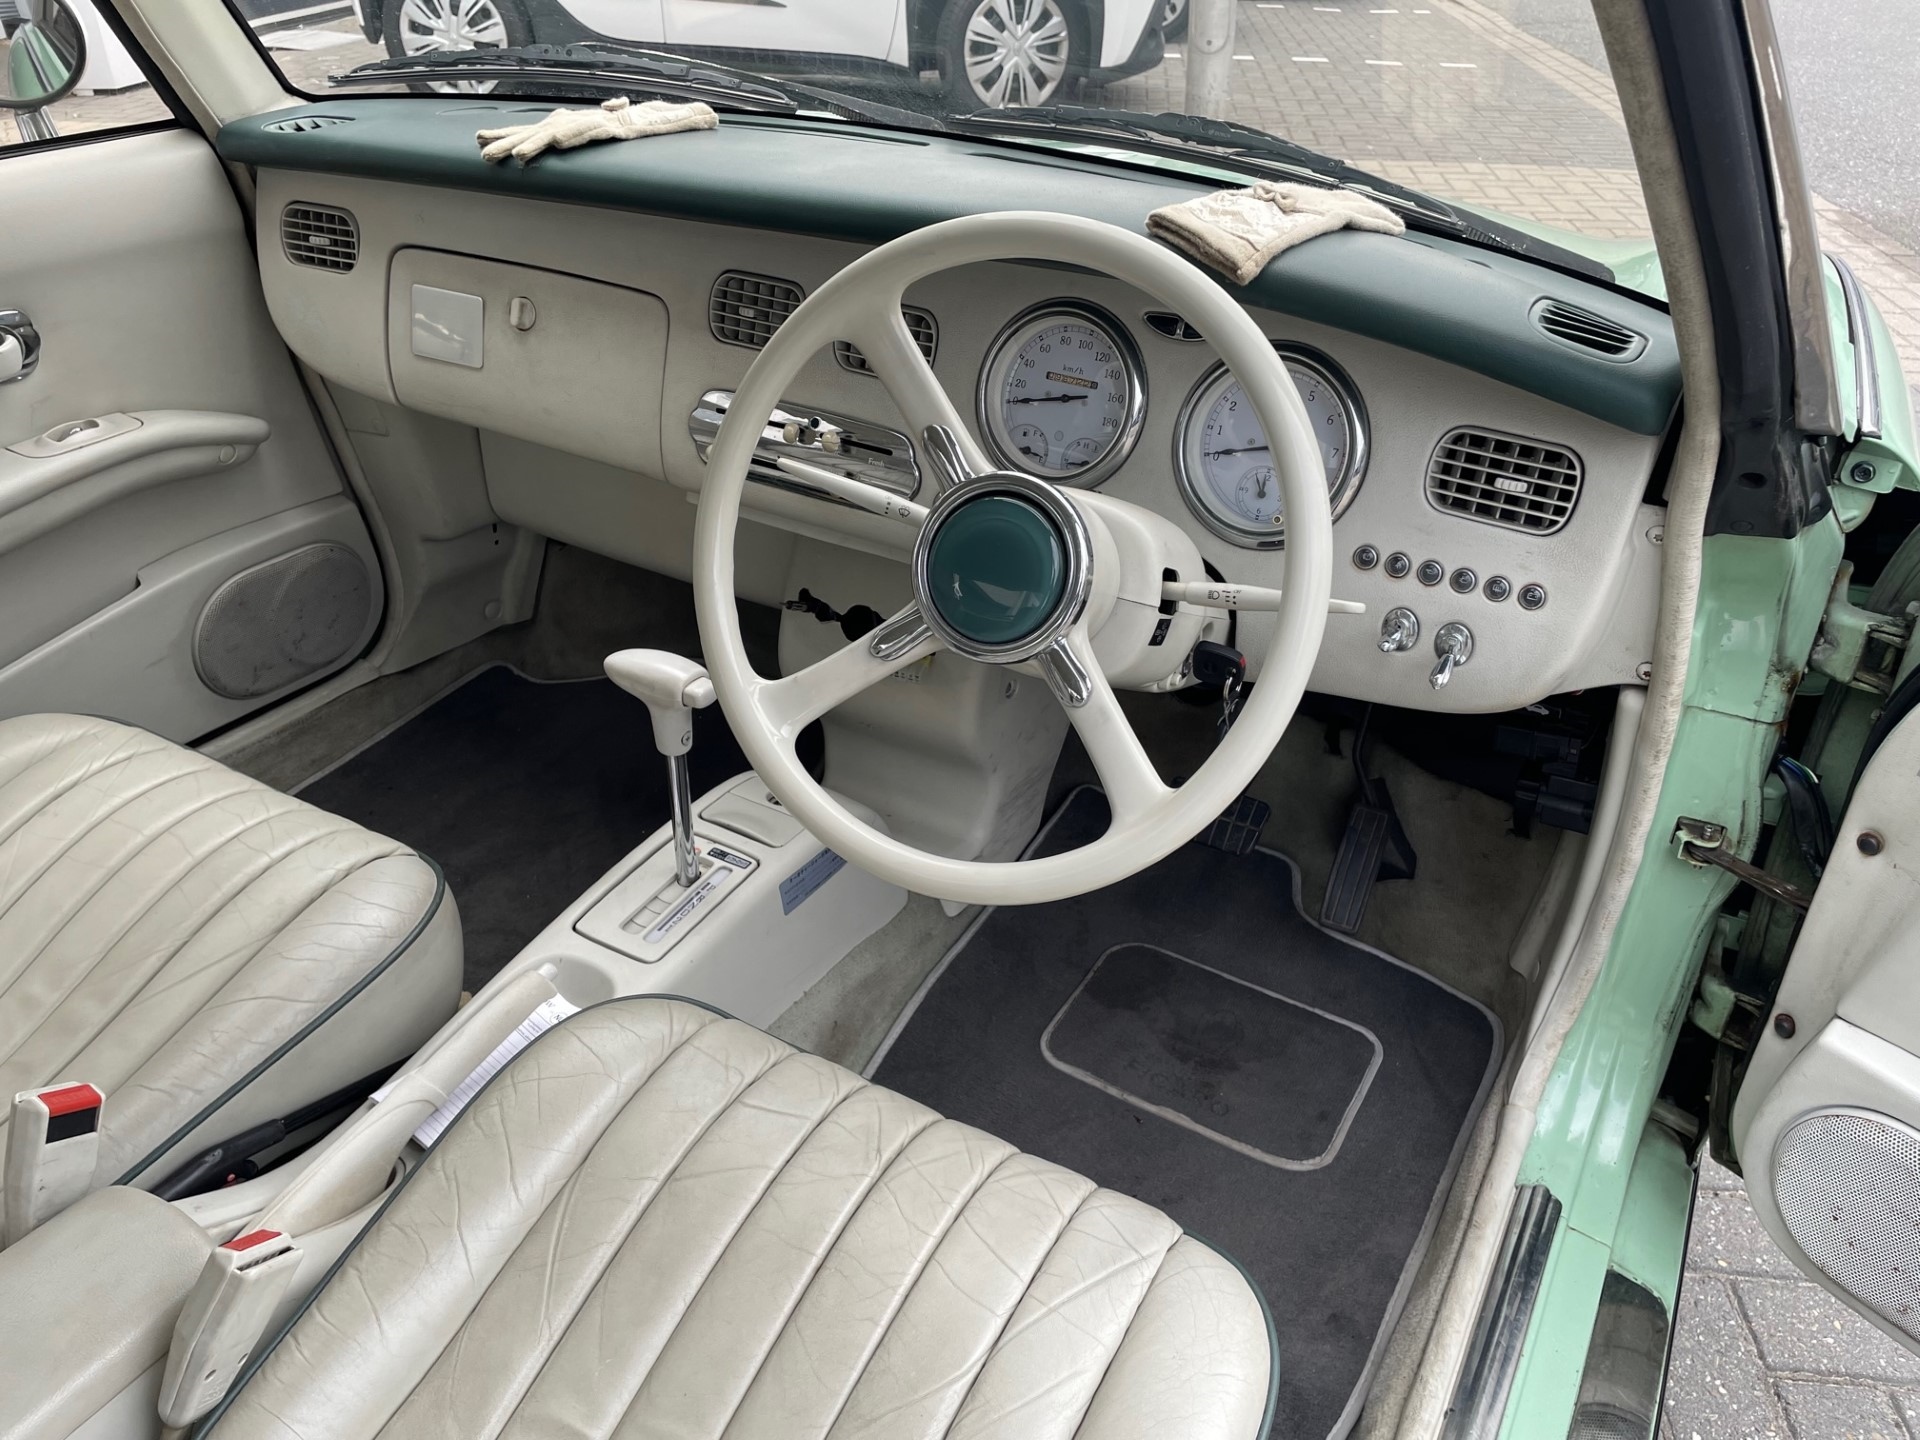 1991 Nissan 206 Figaro groen oldtimer te koop